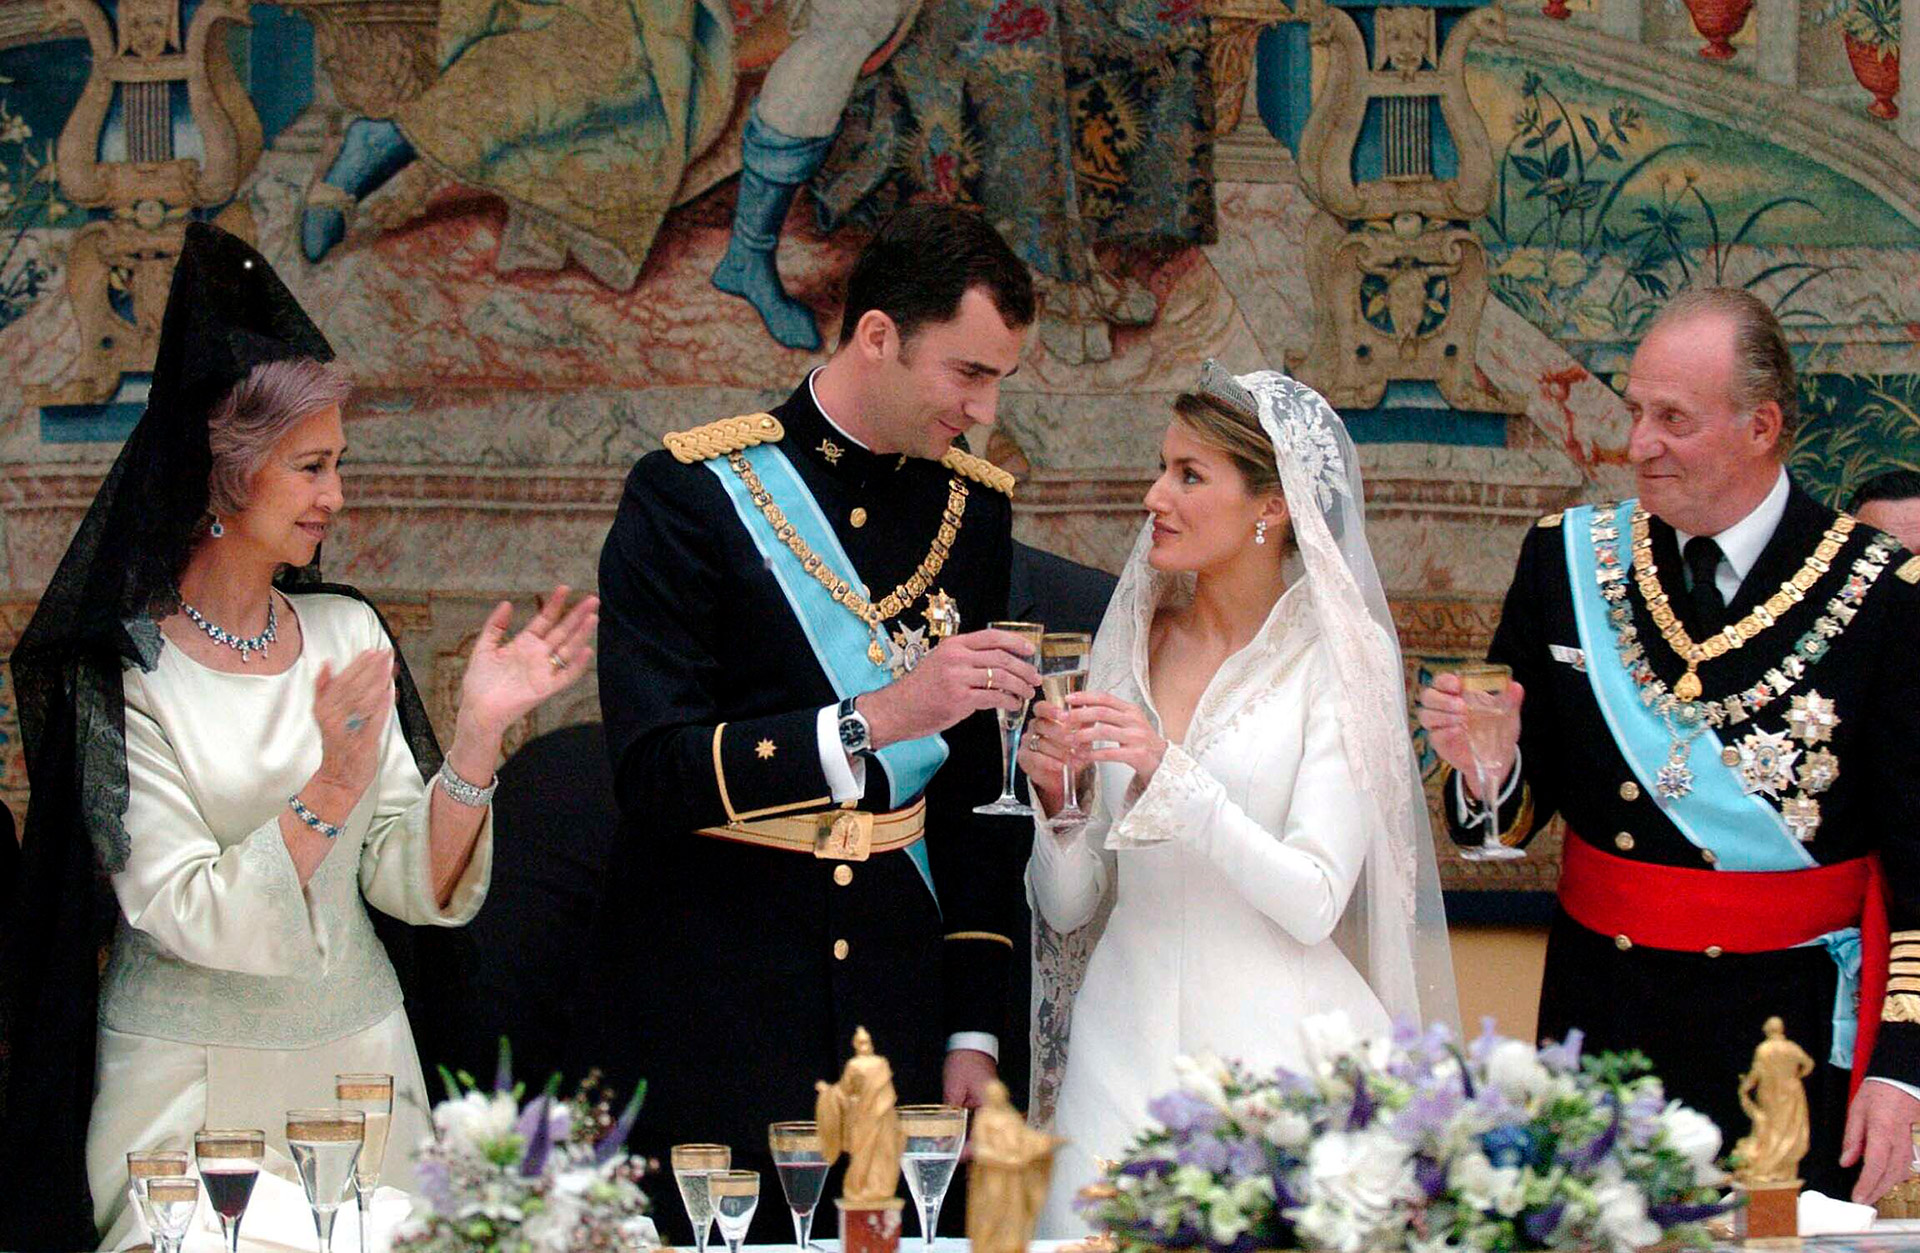 La boda real entre el príncipe Felipe y Letizia Ortiz en 2004 (Photo©2004: The Grosby Group)